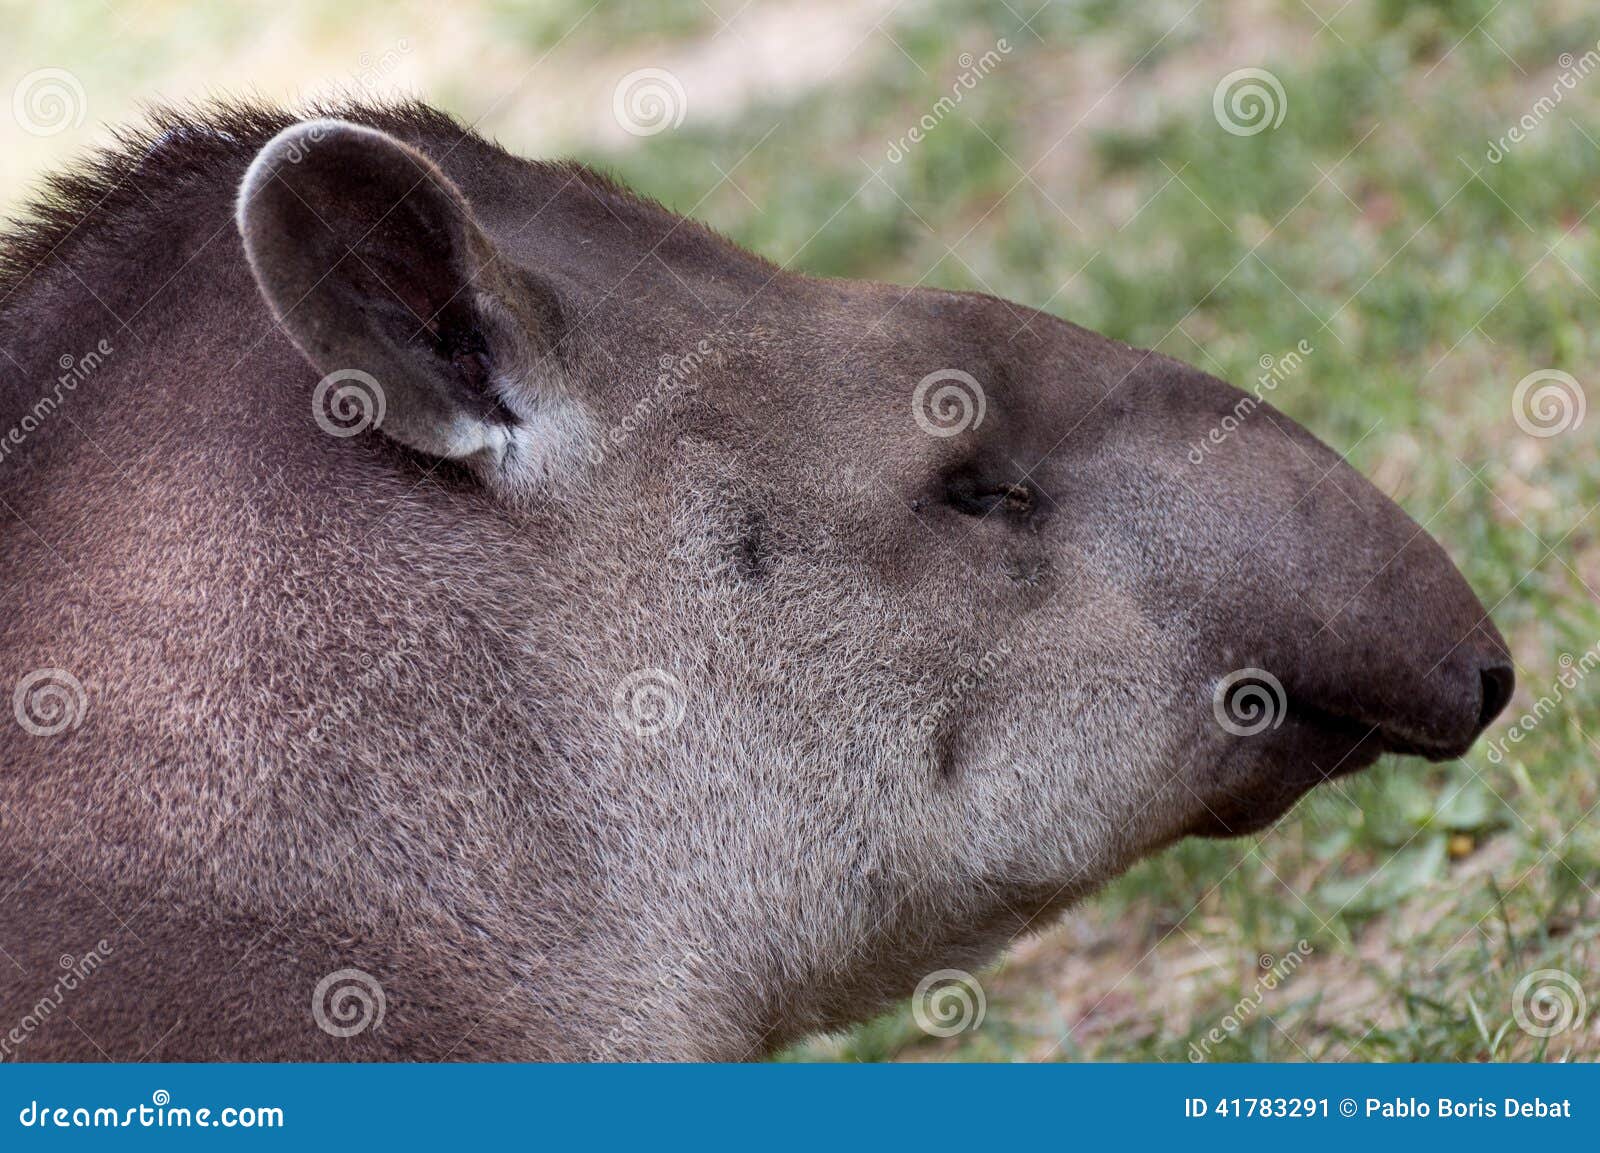 tapirus terrestris closeup portrait